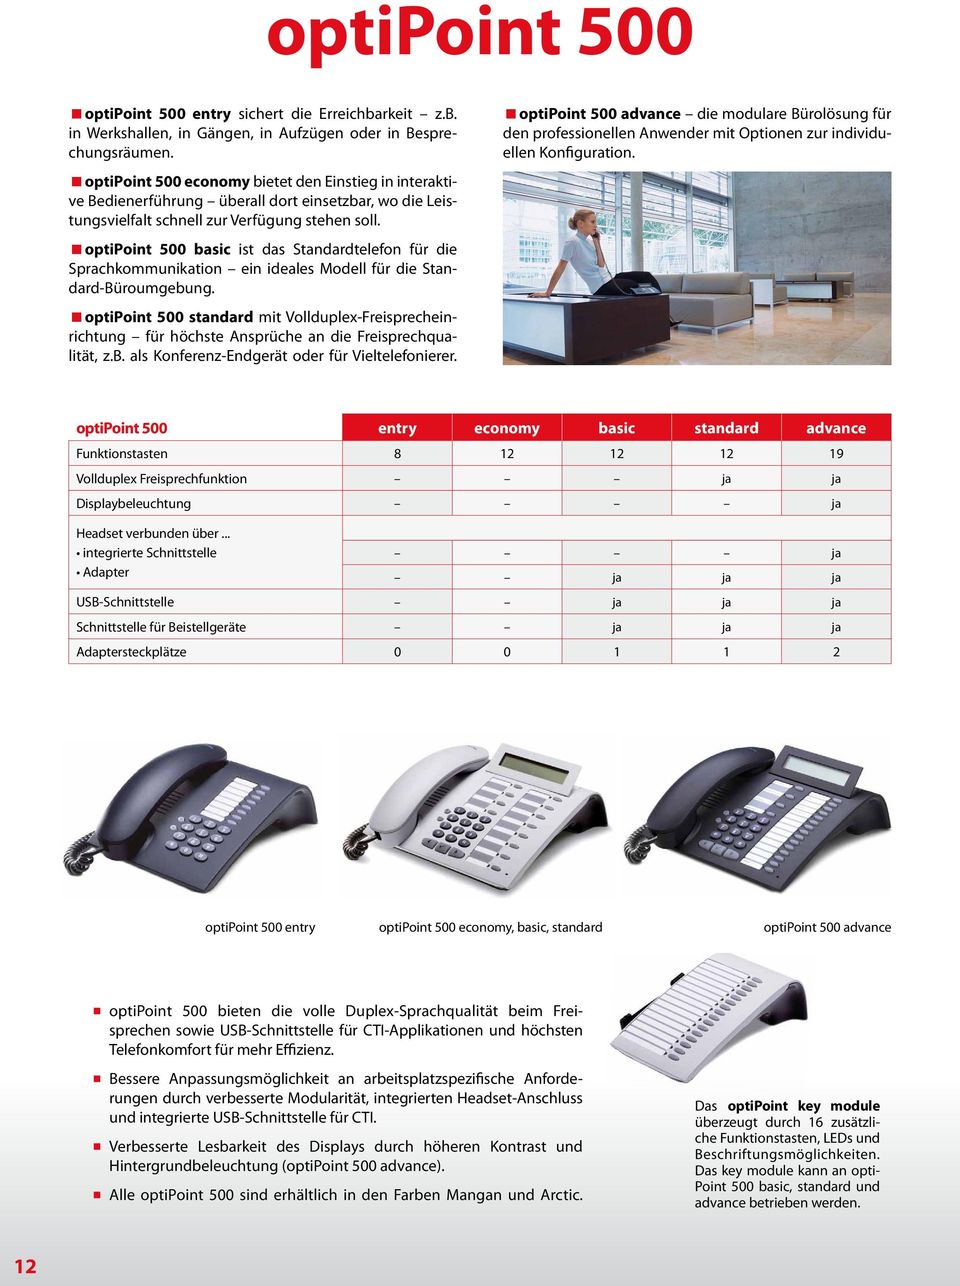 optipoint 500 basic ist das Standardtelefon für die Sprachkommunikation ein ideales Modell für die Standard-Büroumgebung.